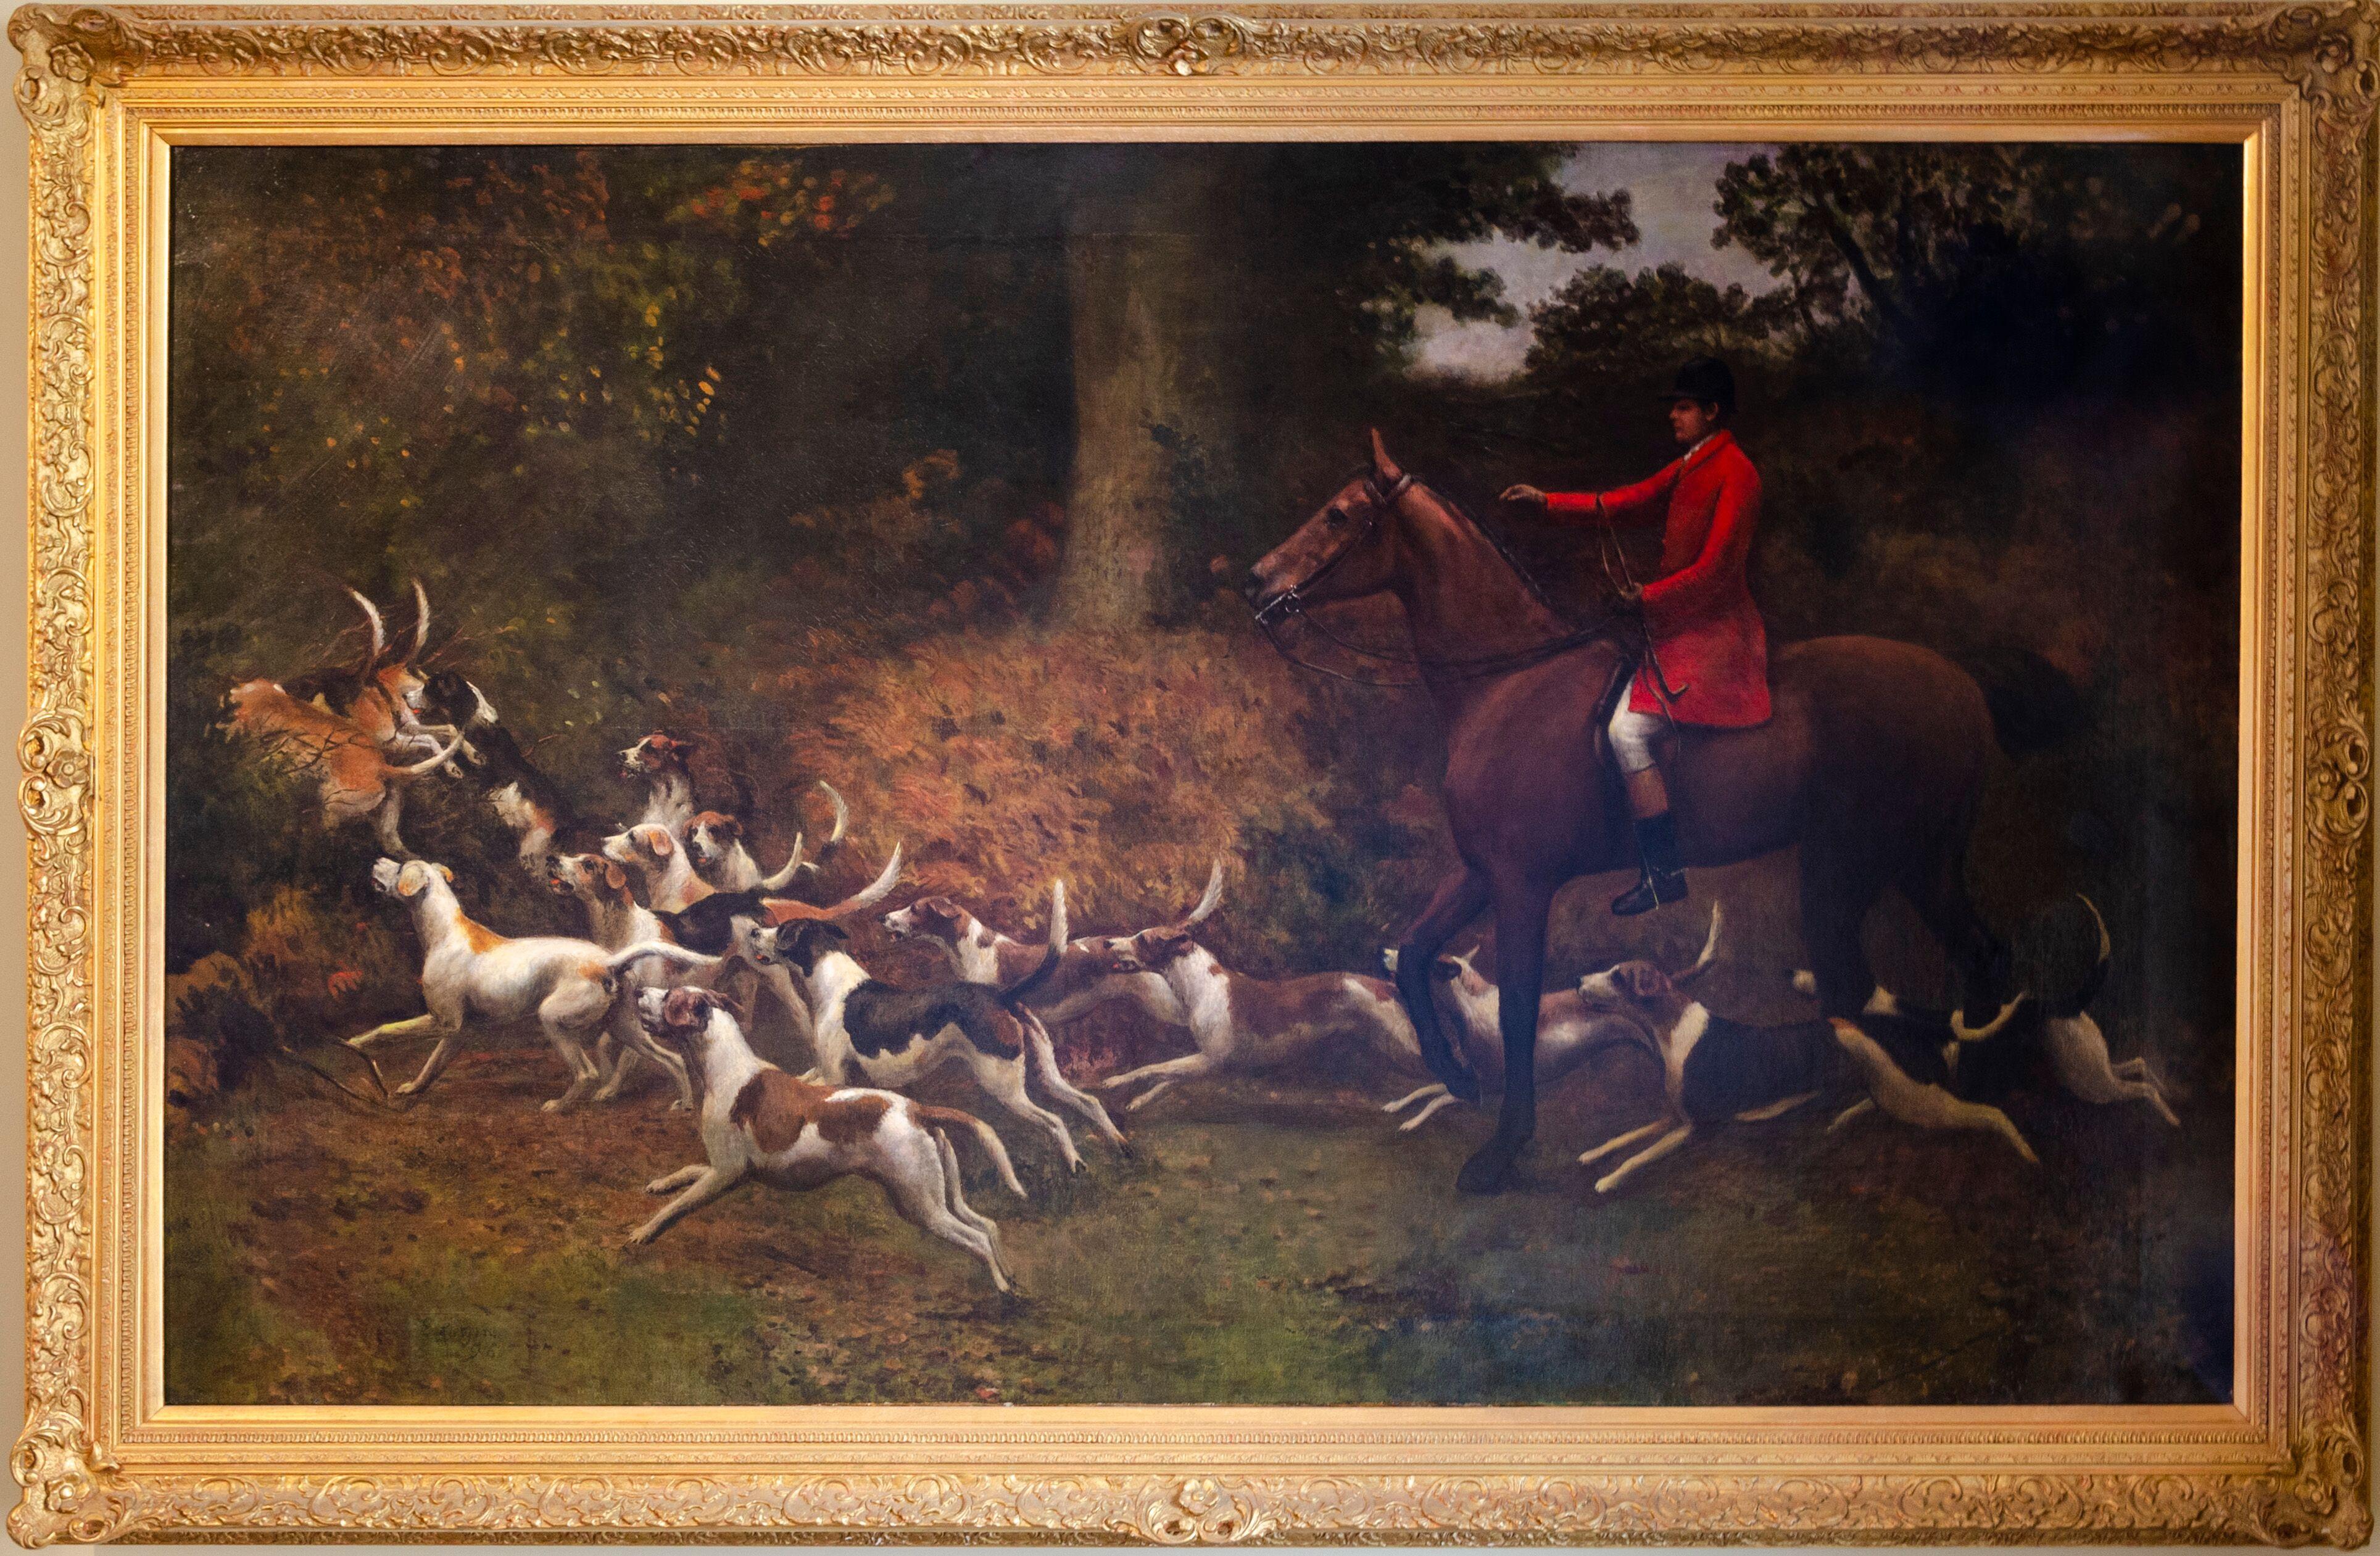 Enorme britische Sportpferde und Hunde auf der Jagd, Ölgemälde des 19. Jahrhunderts